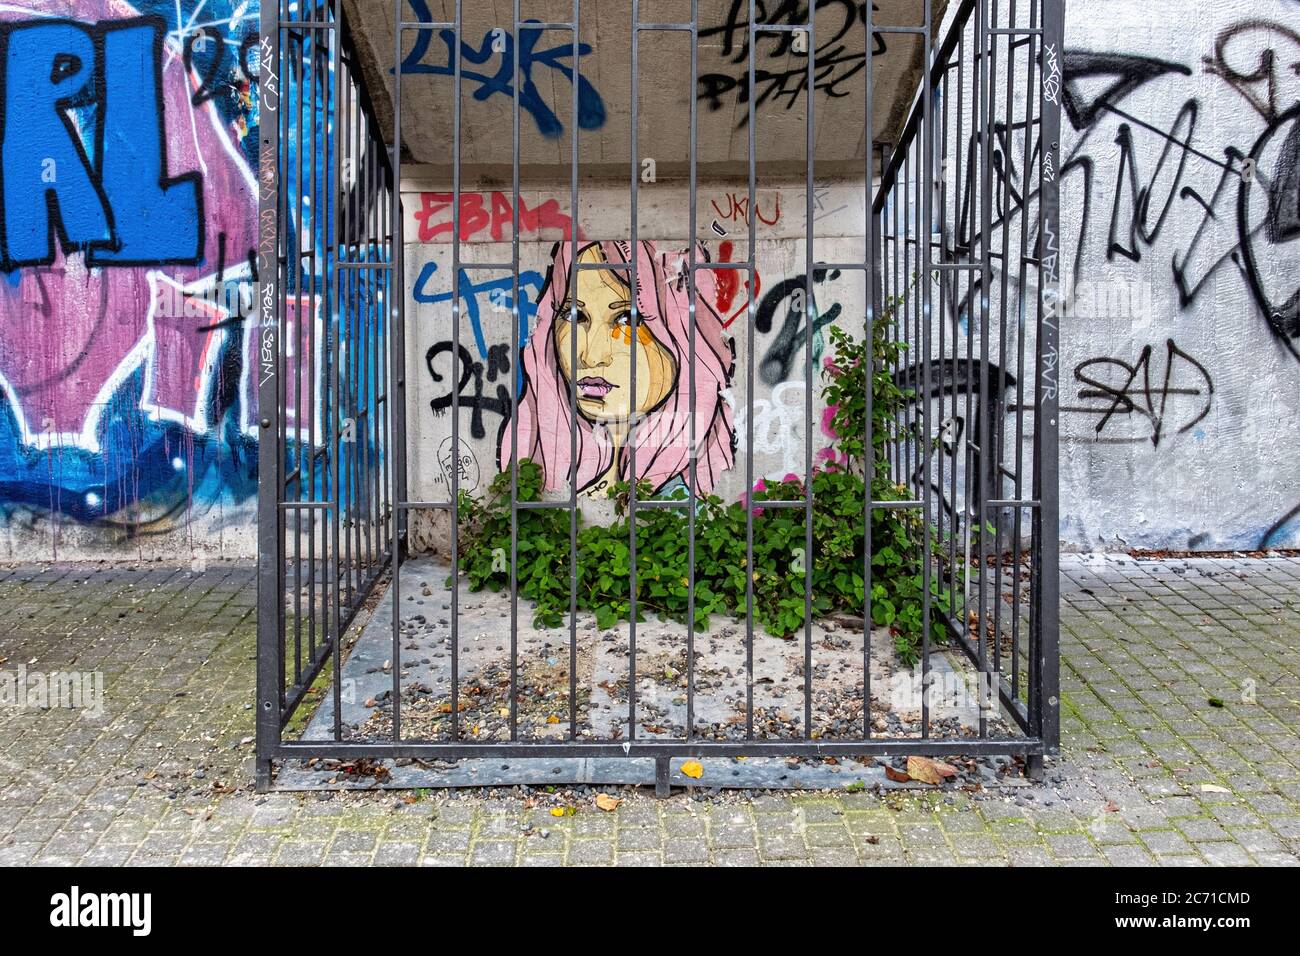 Arte callejero Paste-up. Mujer "zornaga" y se ordeñe detrás de las rejas de el Bocho en Mitte, Berlín, Alemania Foto de stock